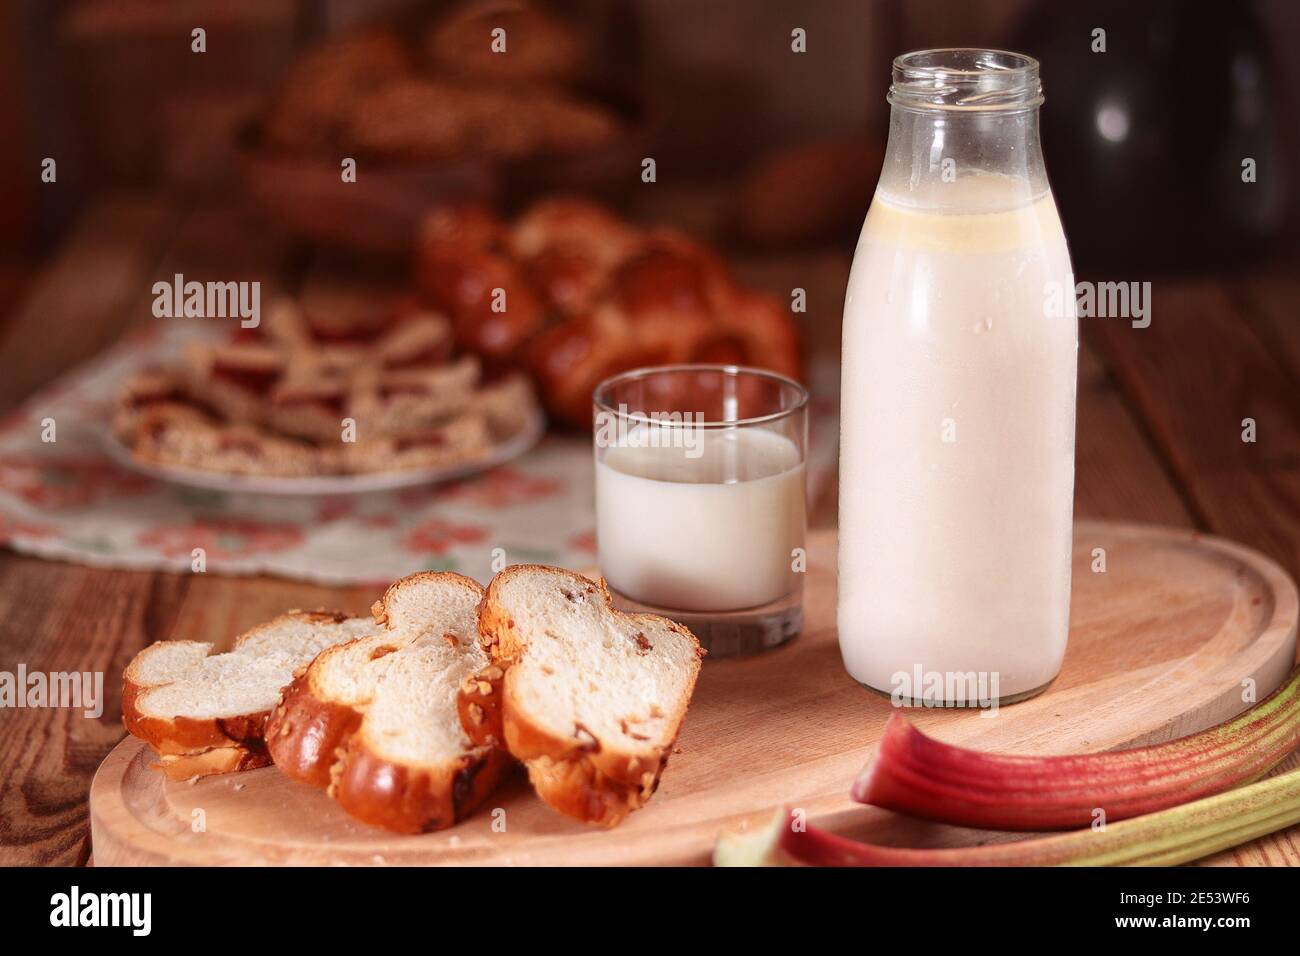 beber leche en una botella, vaso, pastel, vida quieta Foto de stock